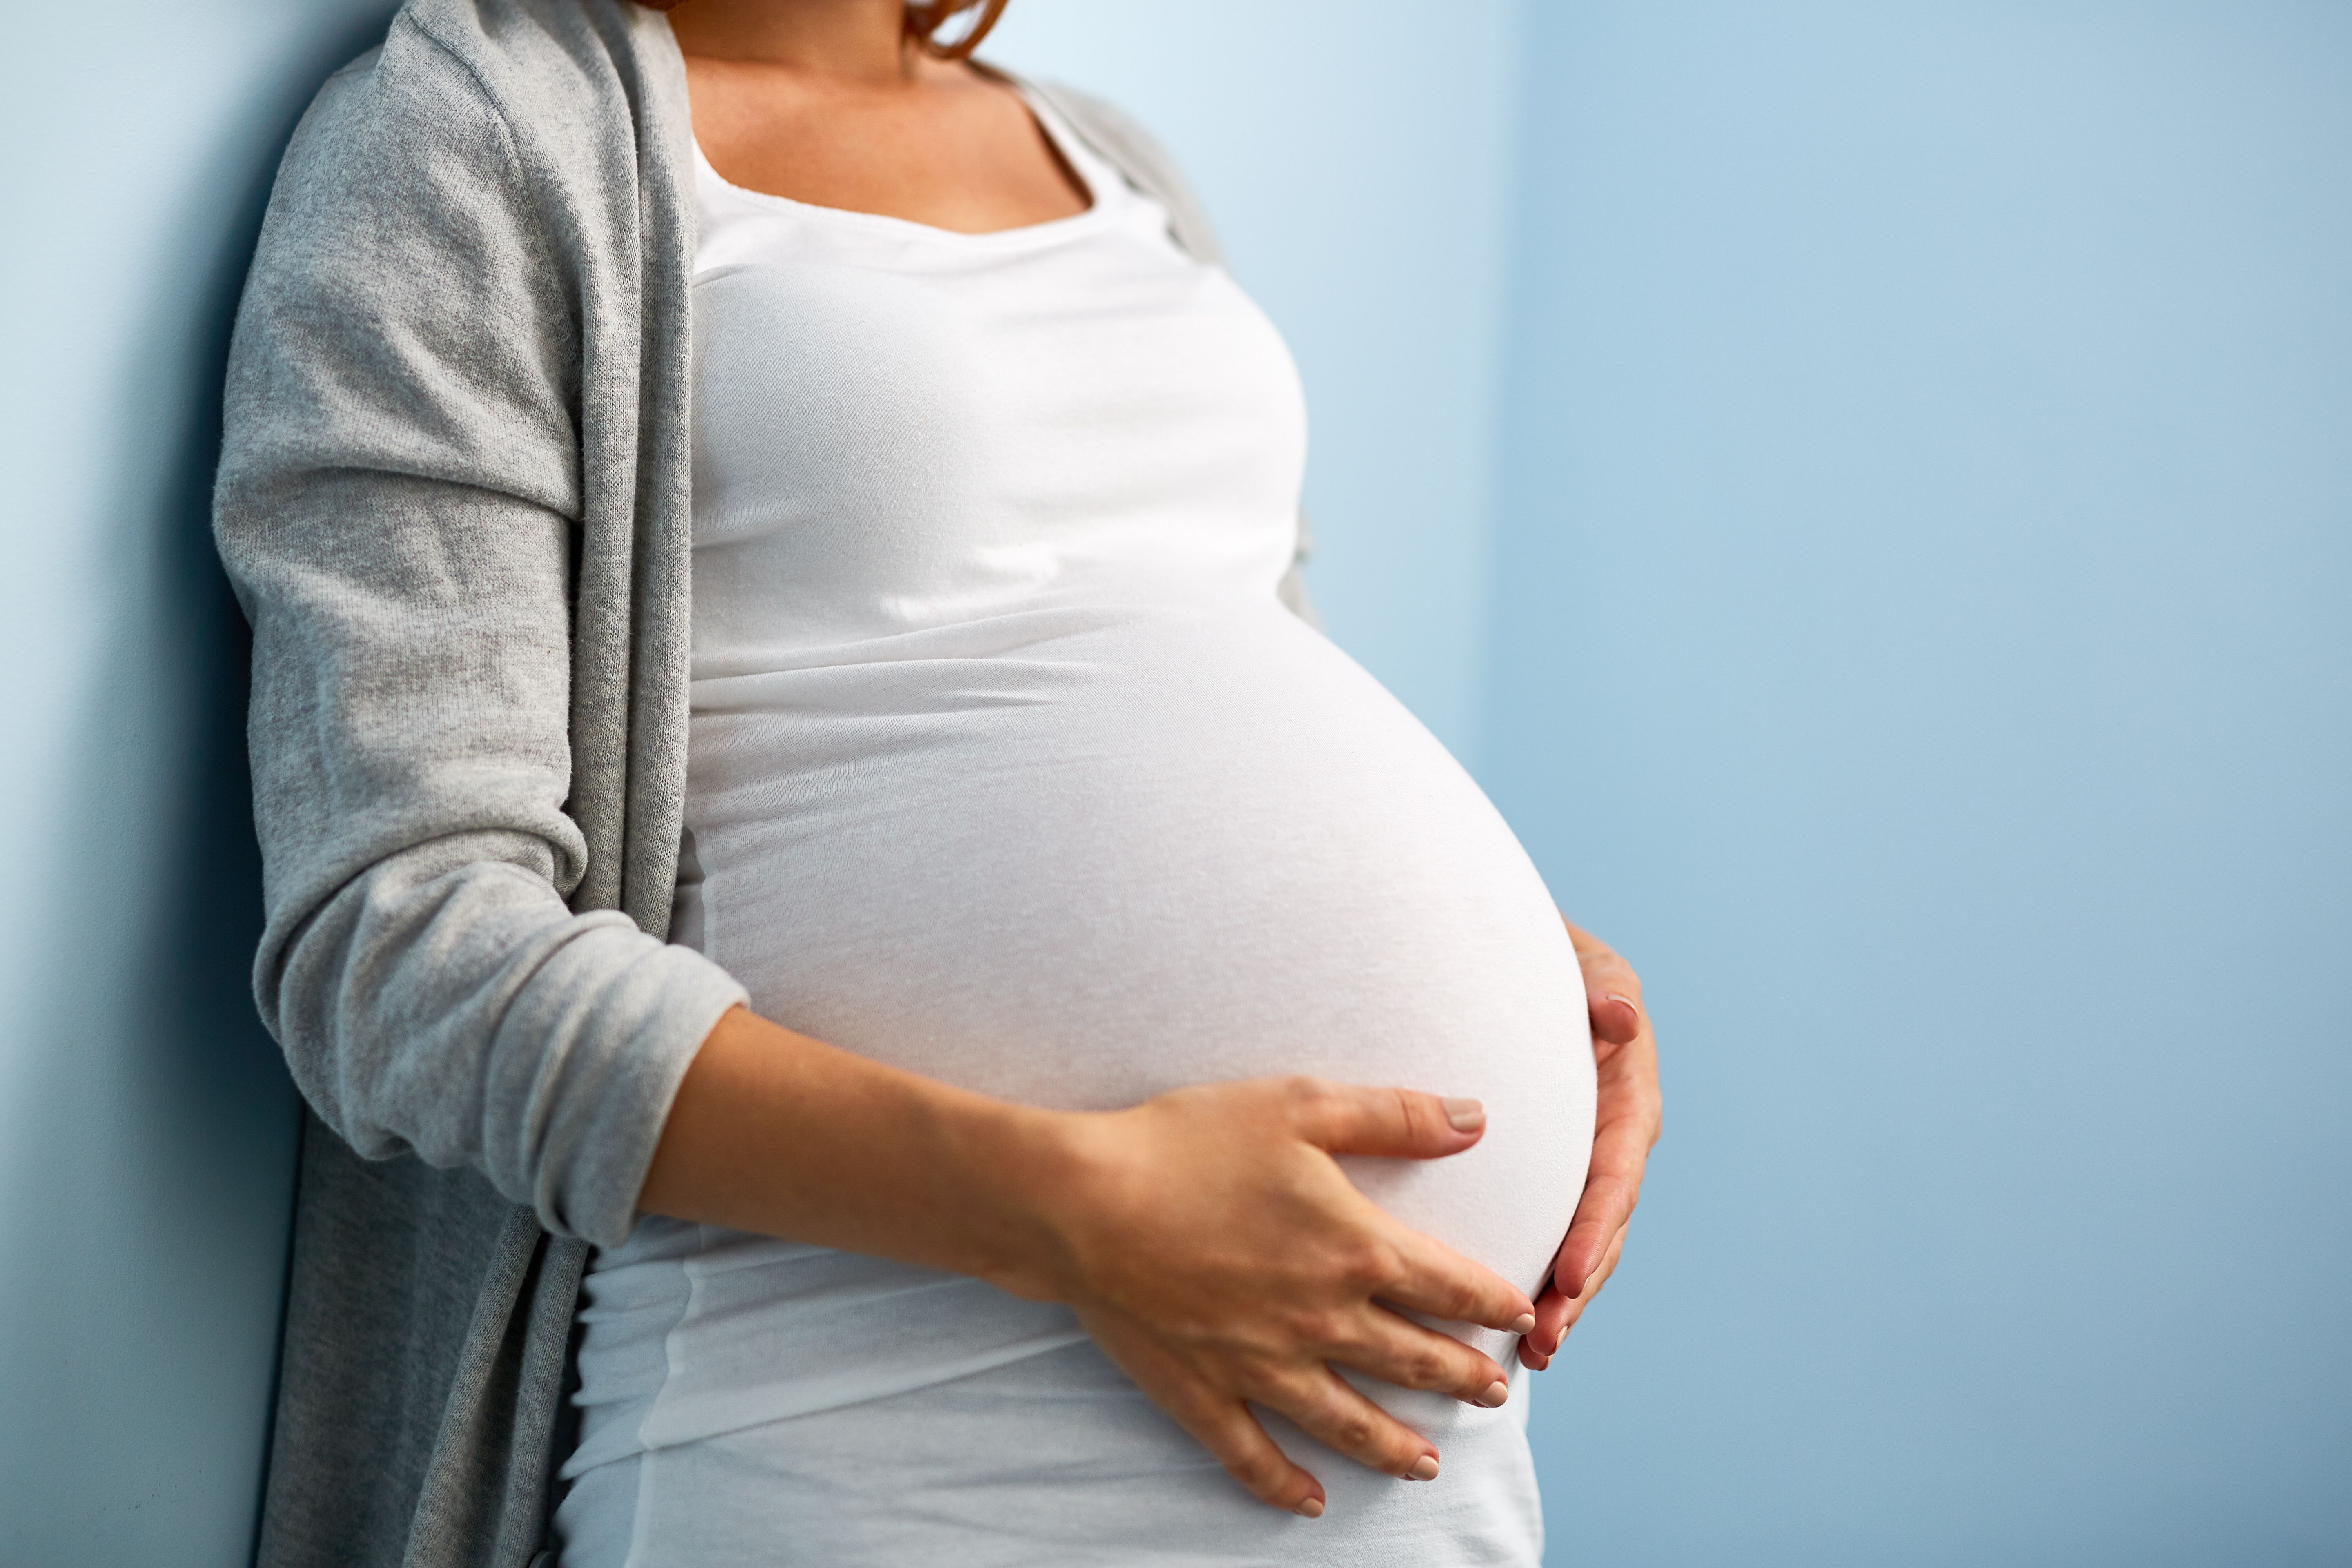 hiv in pregnancy case study